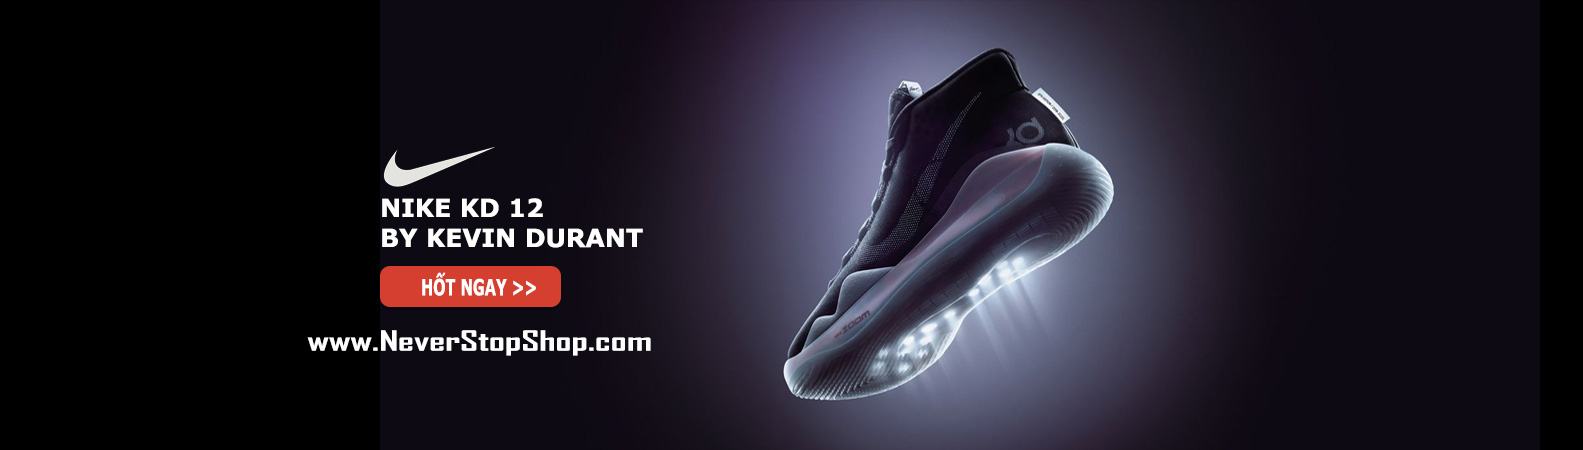 Giày Nike KD 12 bóng rổ cổ cao nam sfake replica giá rẻ tốt nhất HCM NeverStopShop